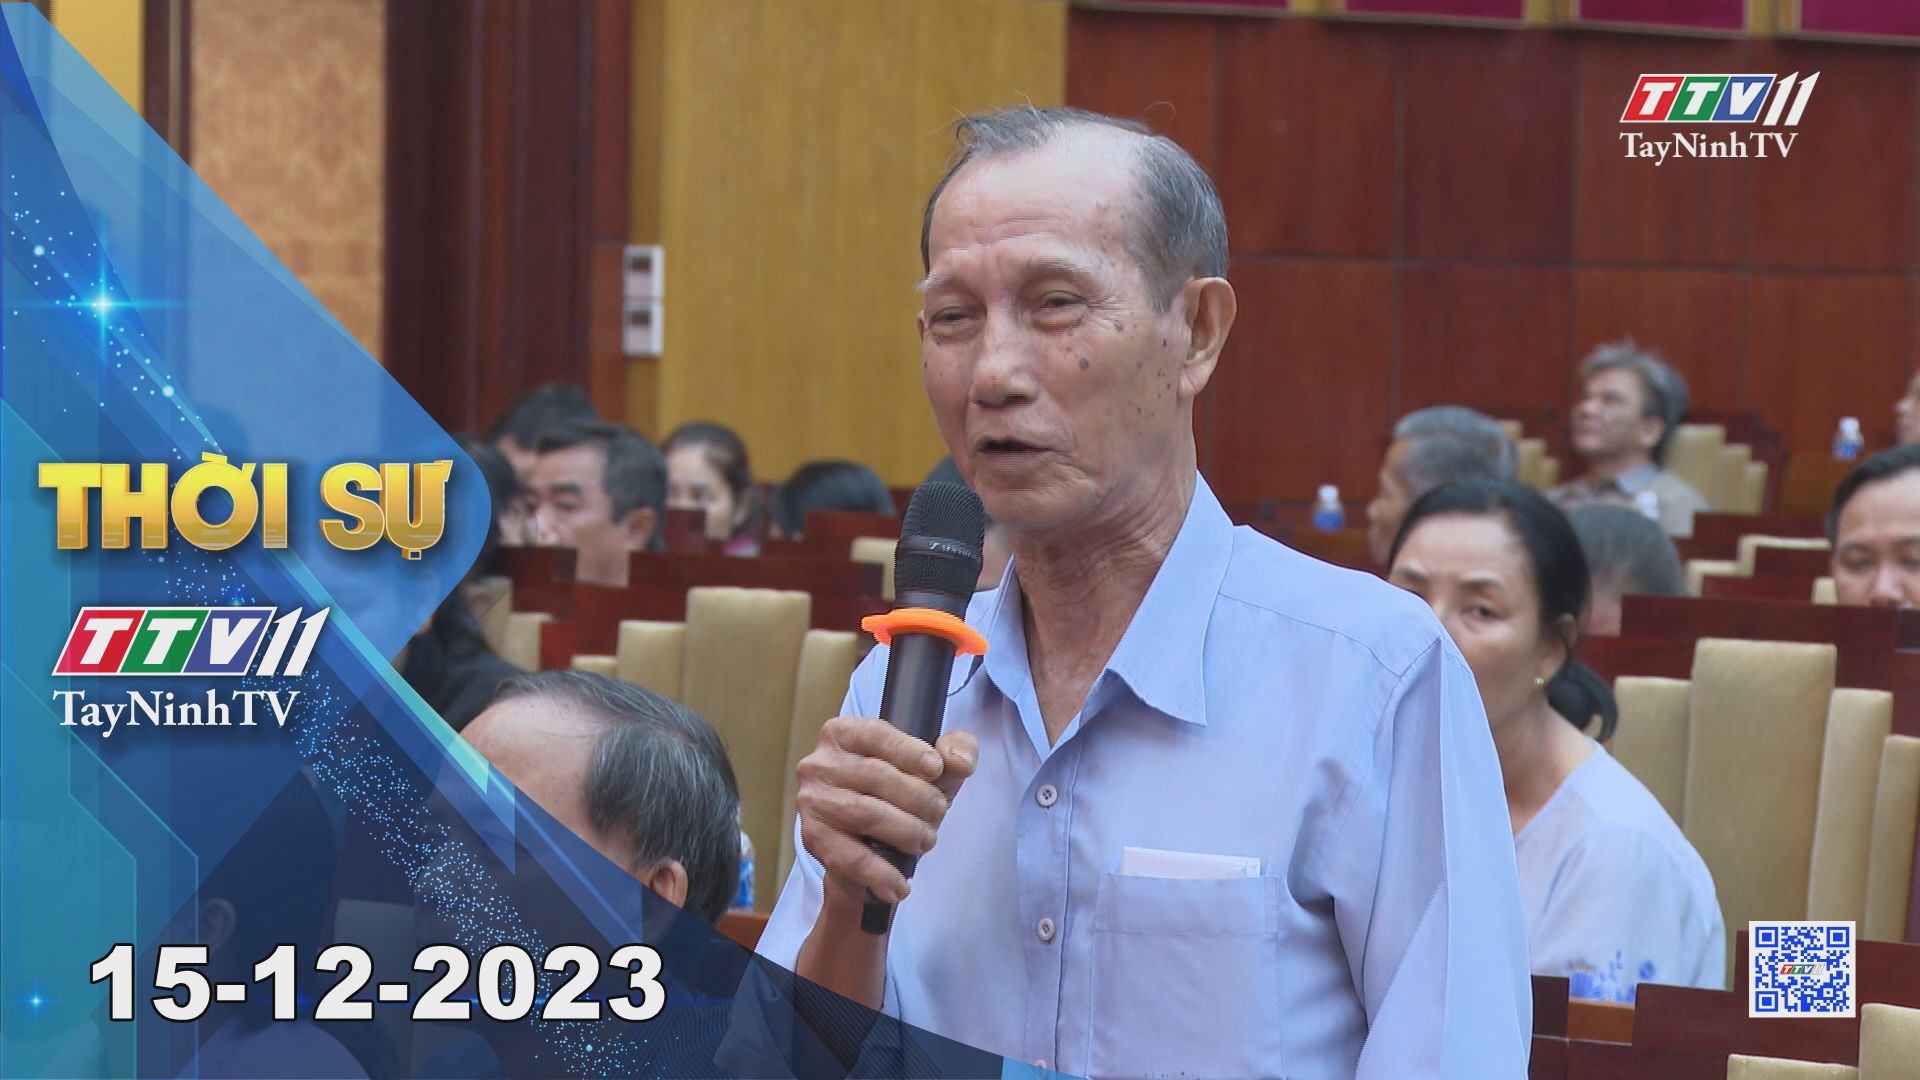 Thời sự Tây Ninh 15-12-2023 | Tin tức hôm nay | TayNinhTV